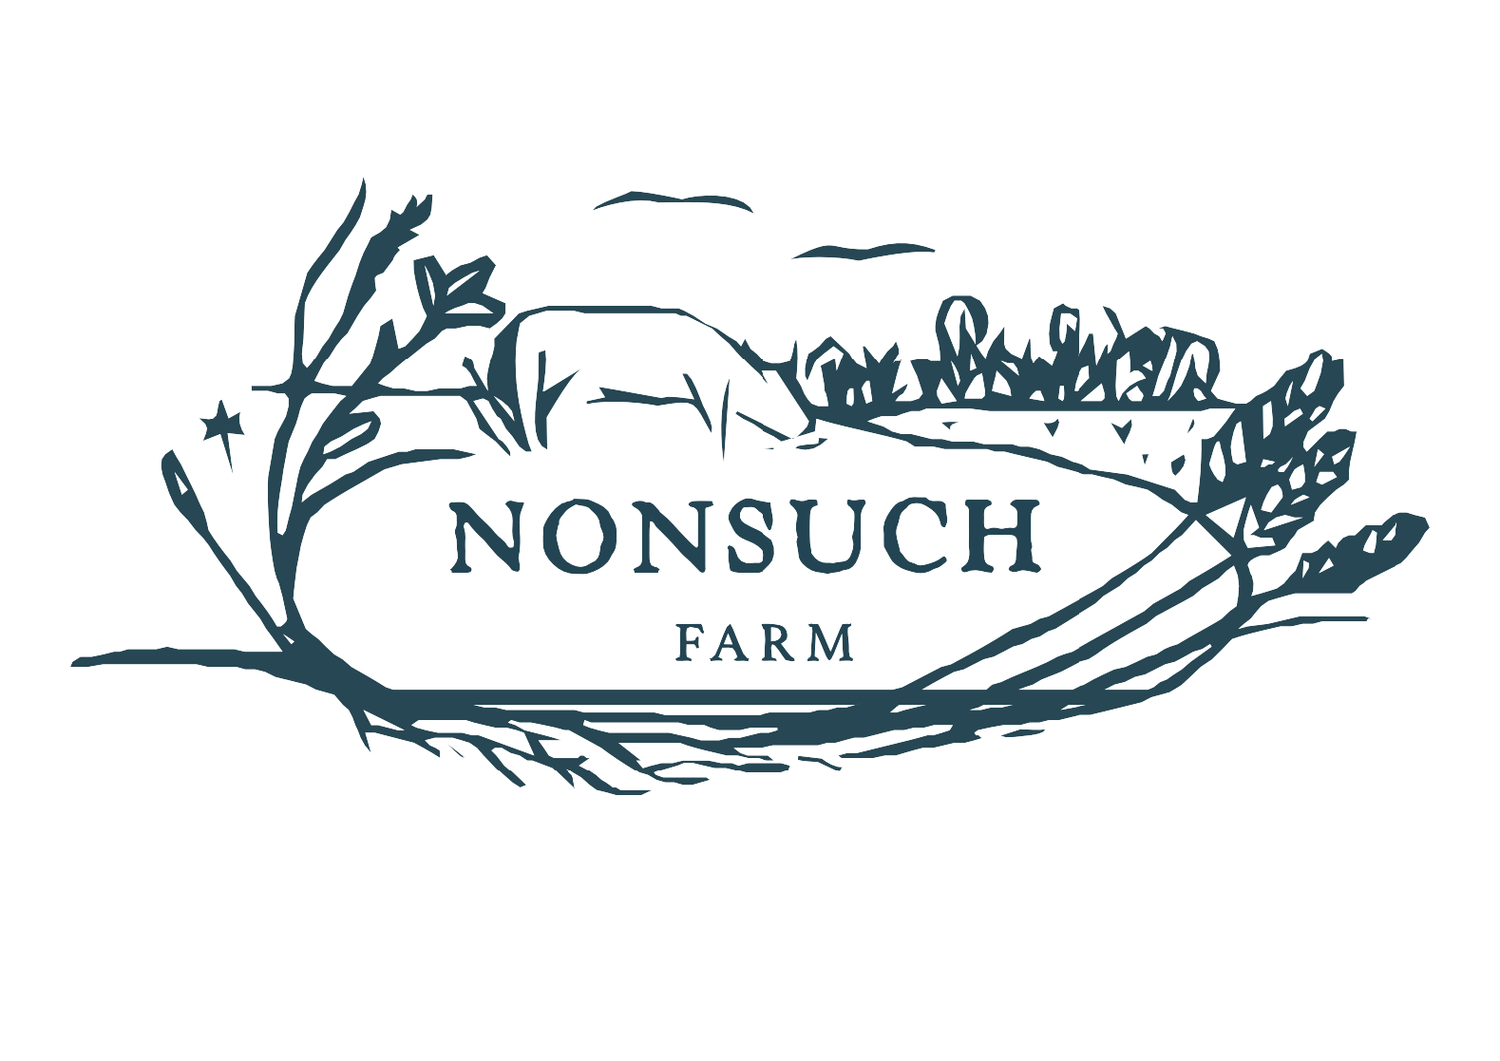 Nonsuch Farm